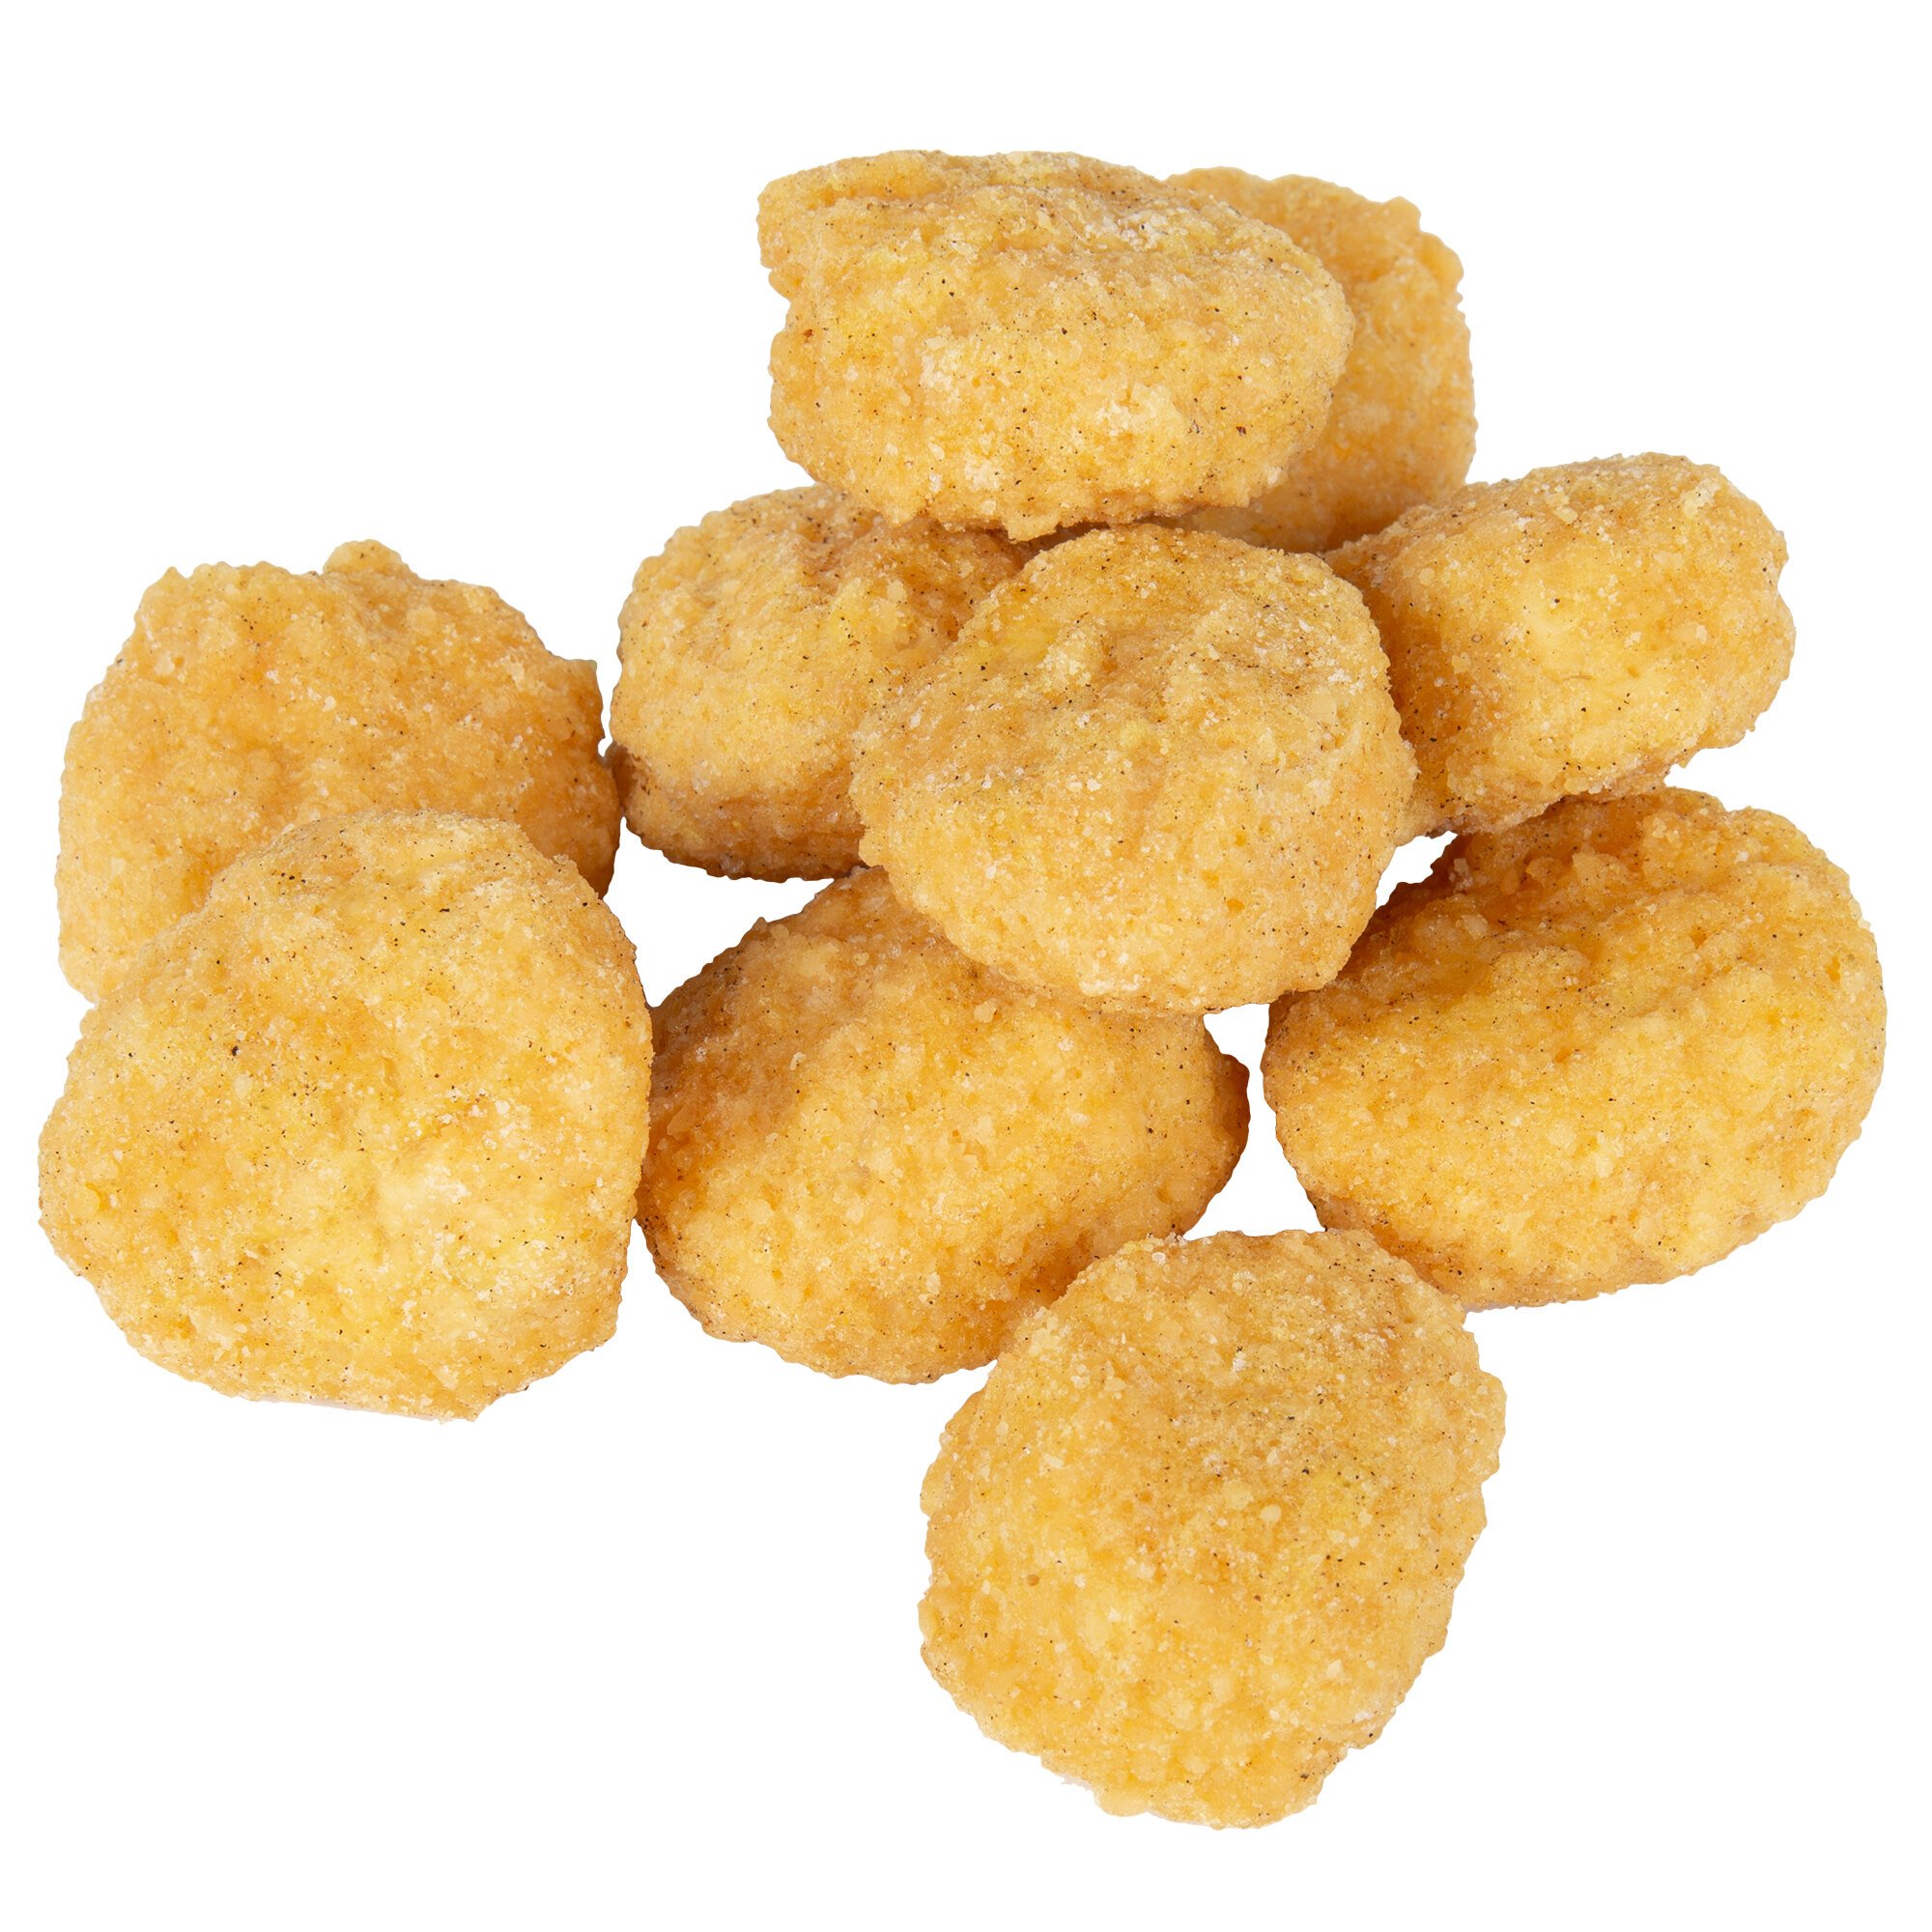 corn nuggets snack